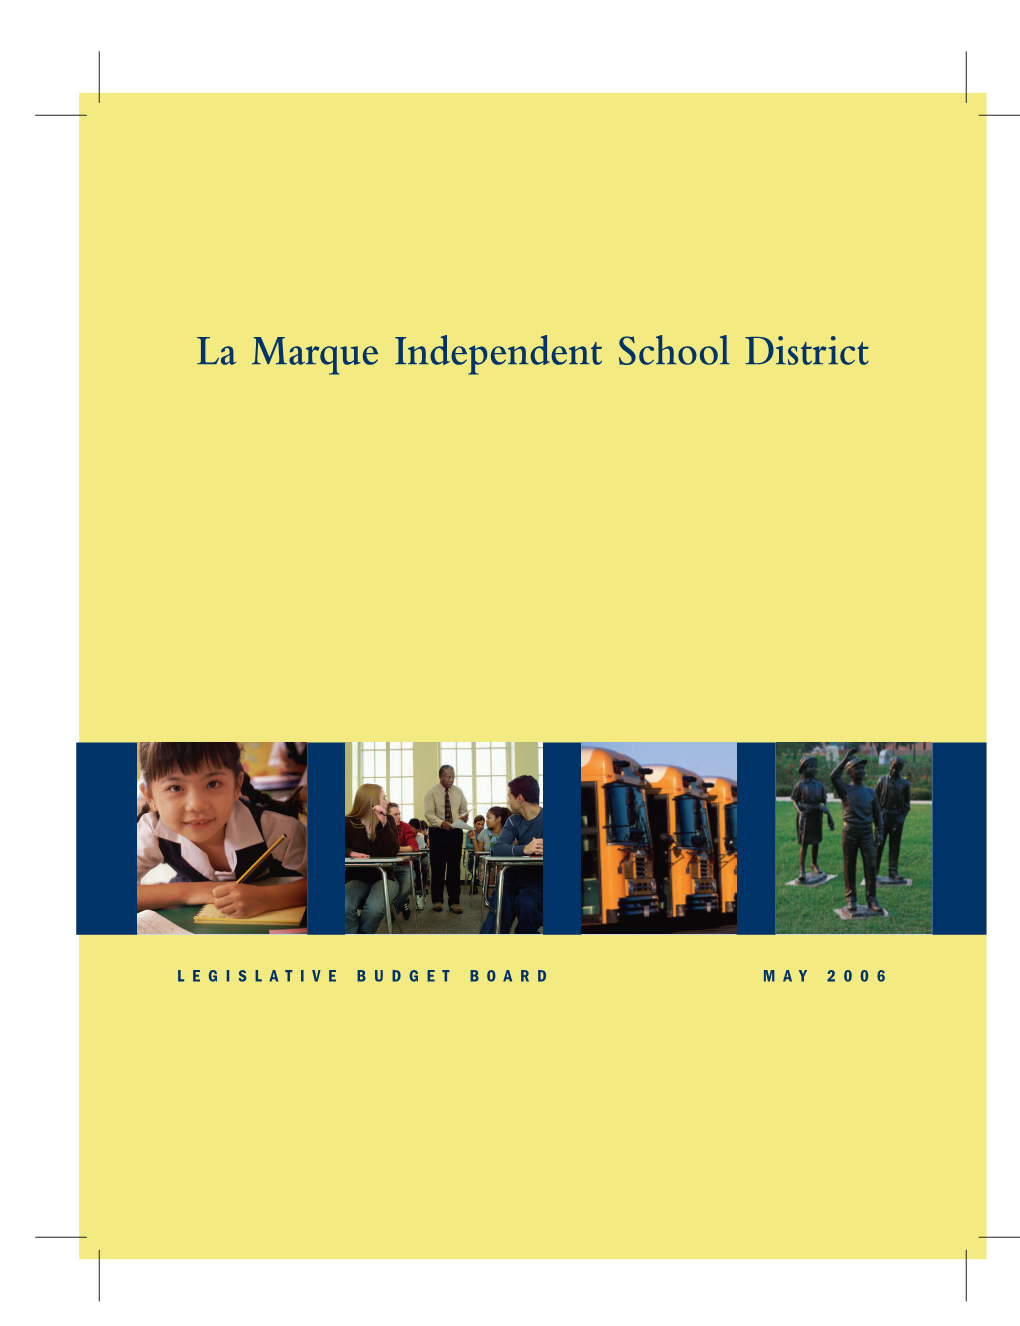 La Marque ISD School Review